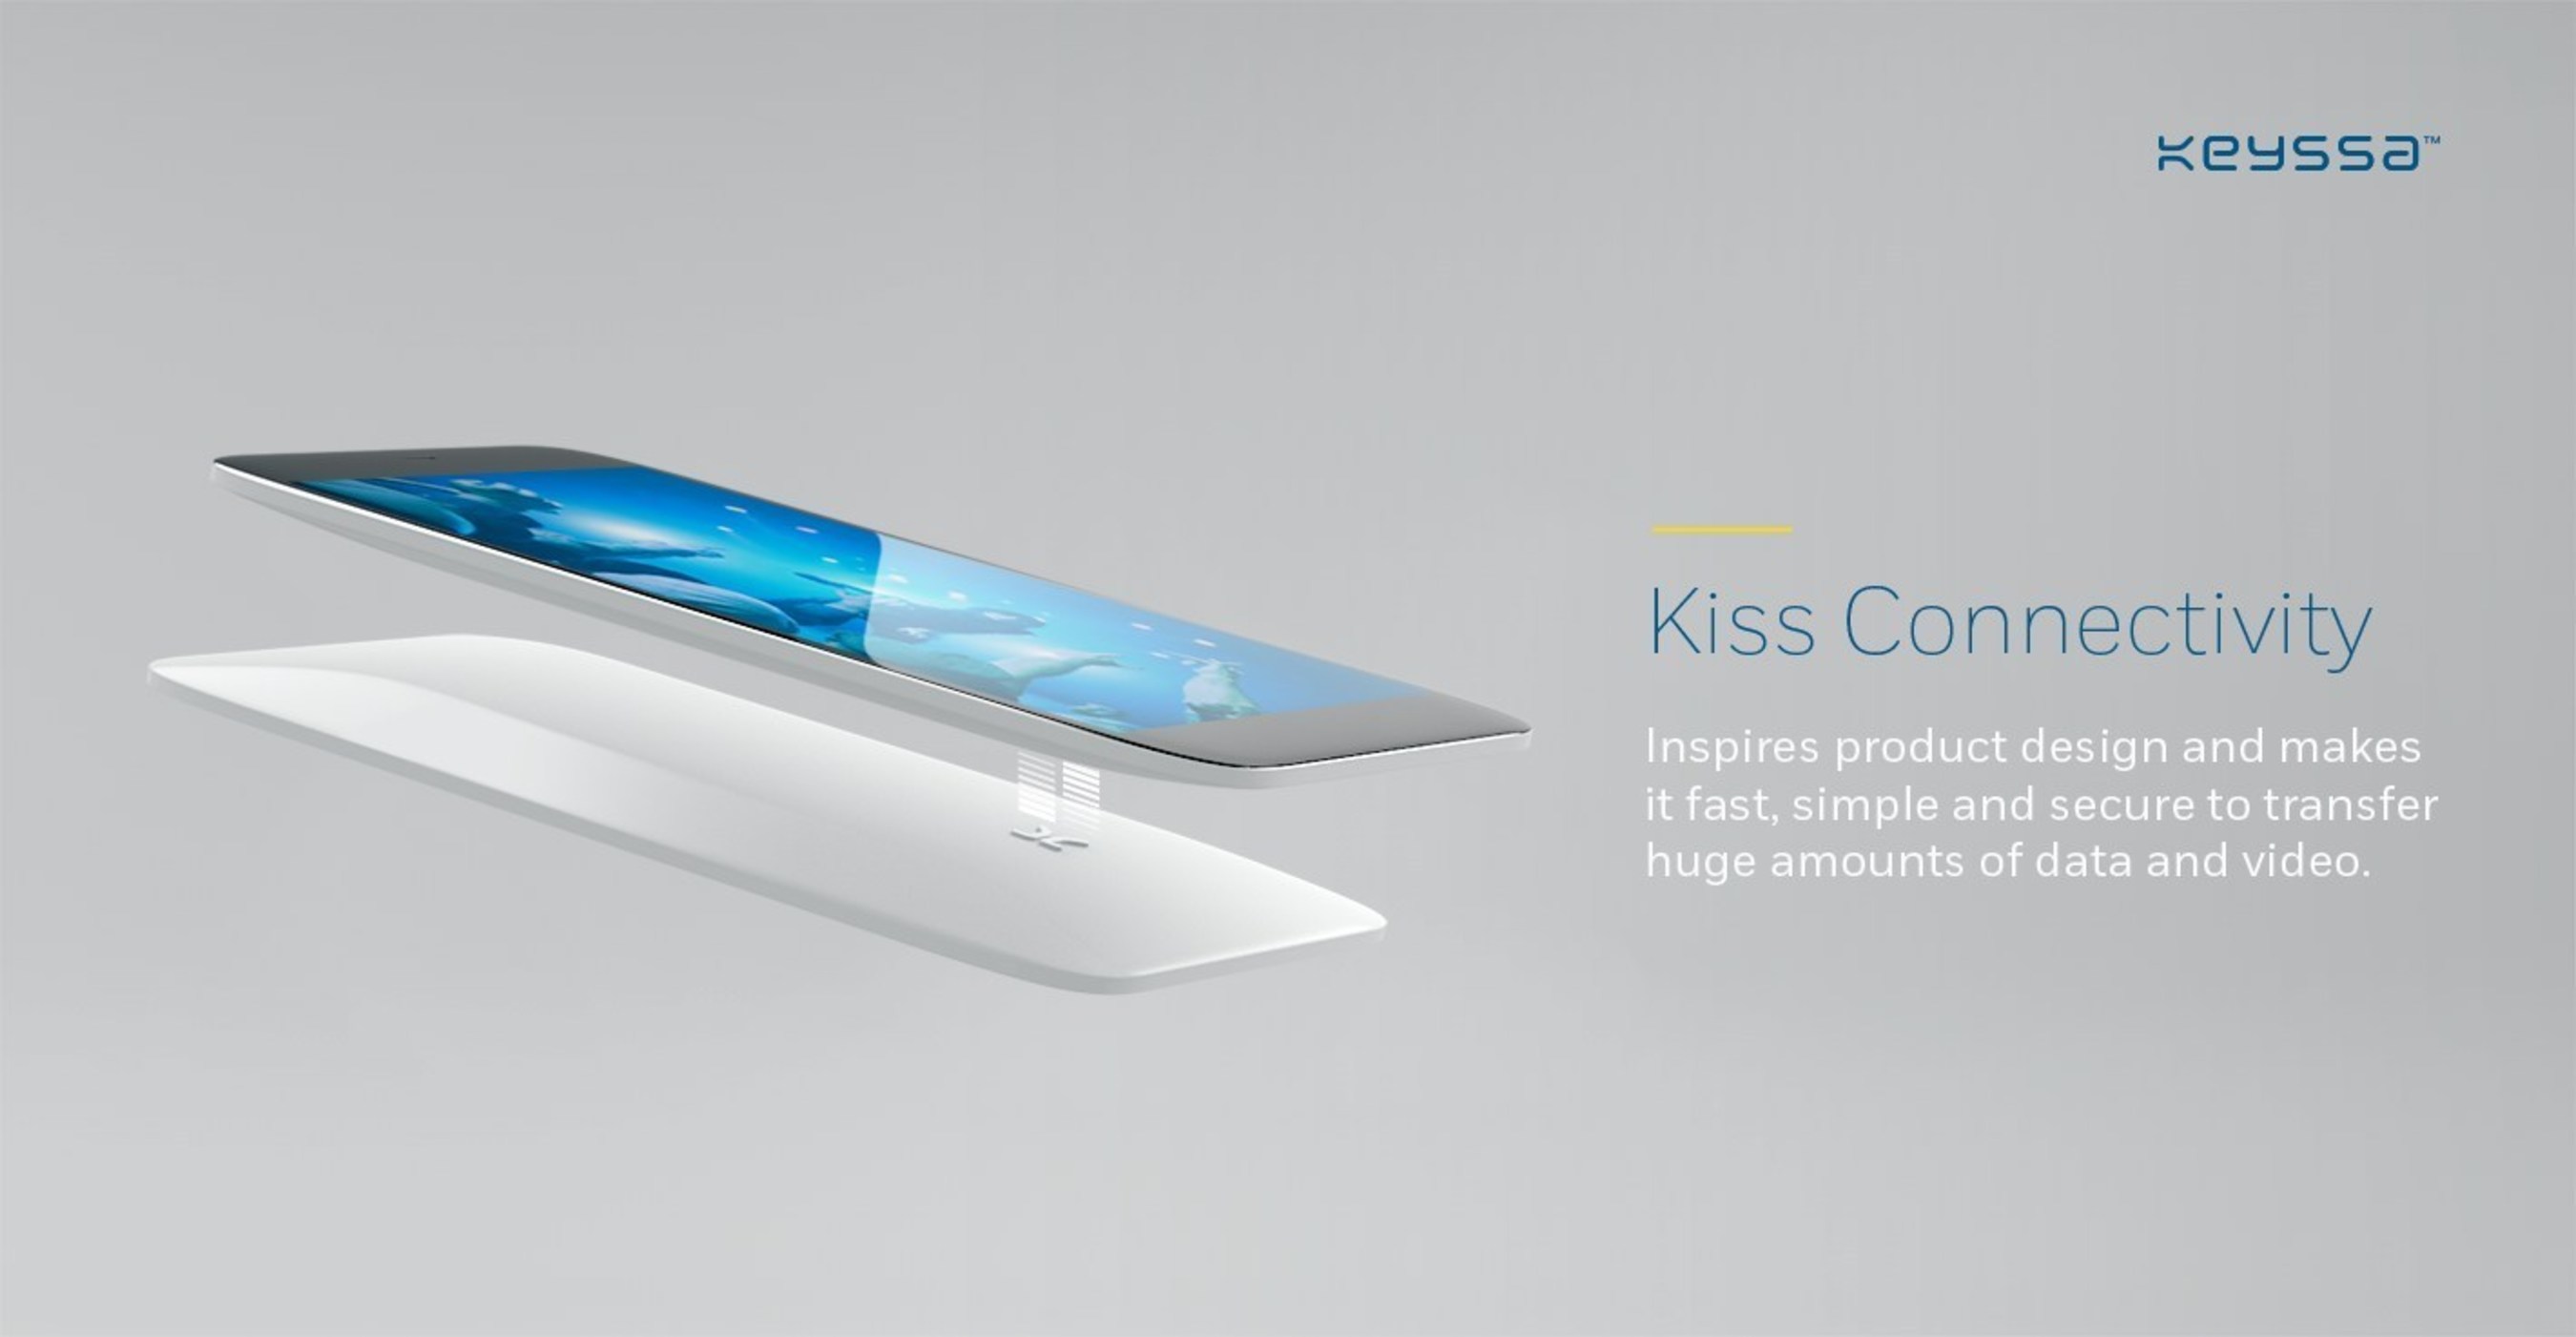 Keyssa's Kiss Connectivity connector